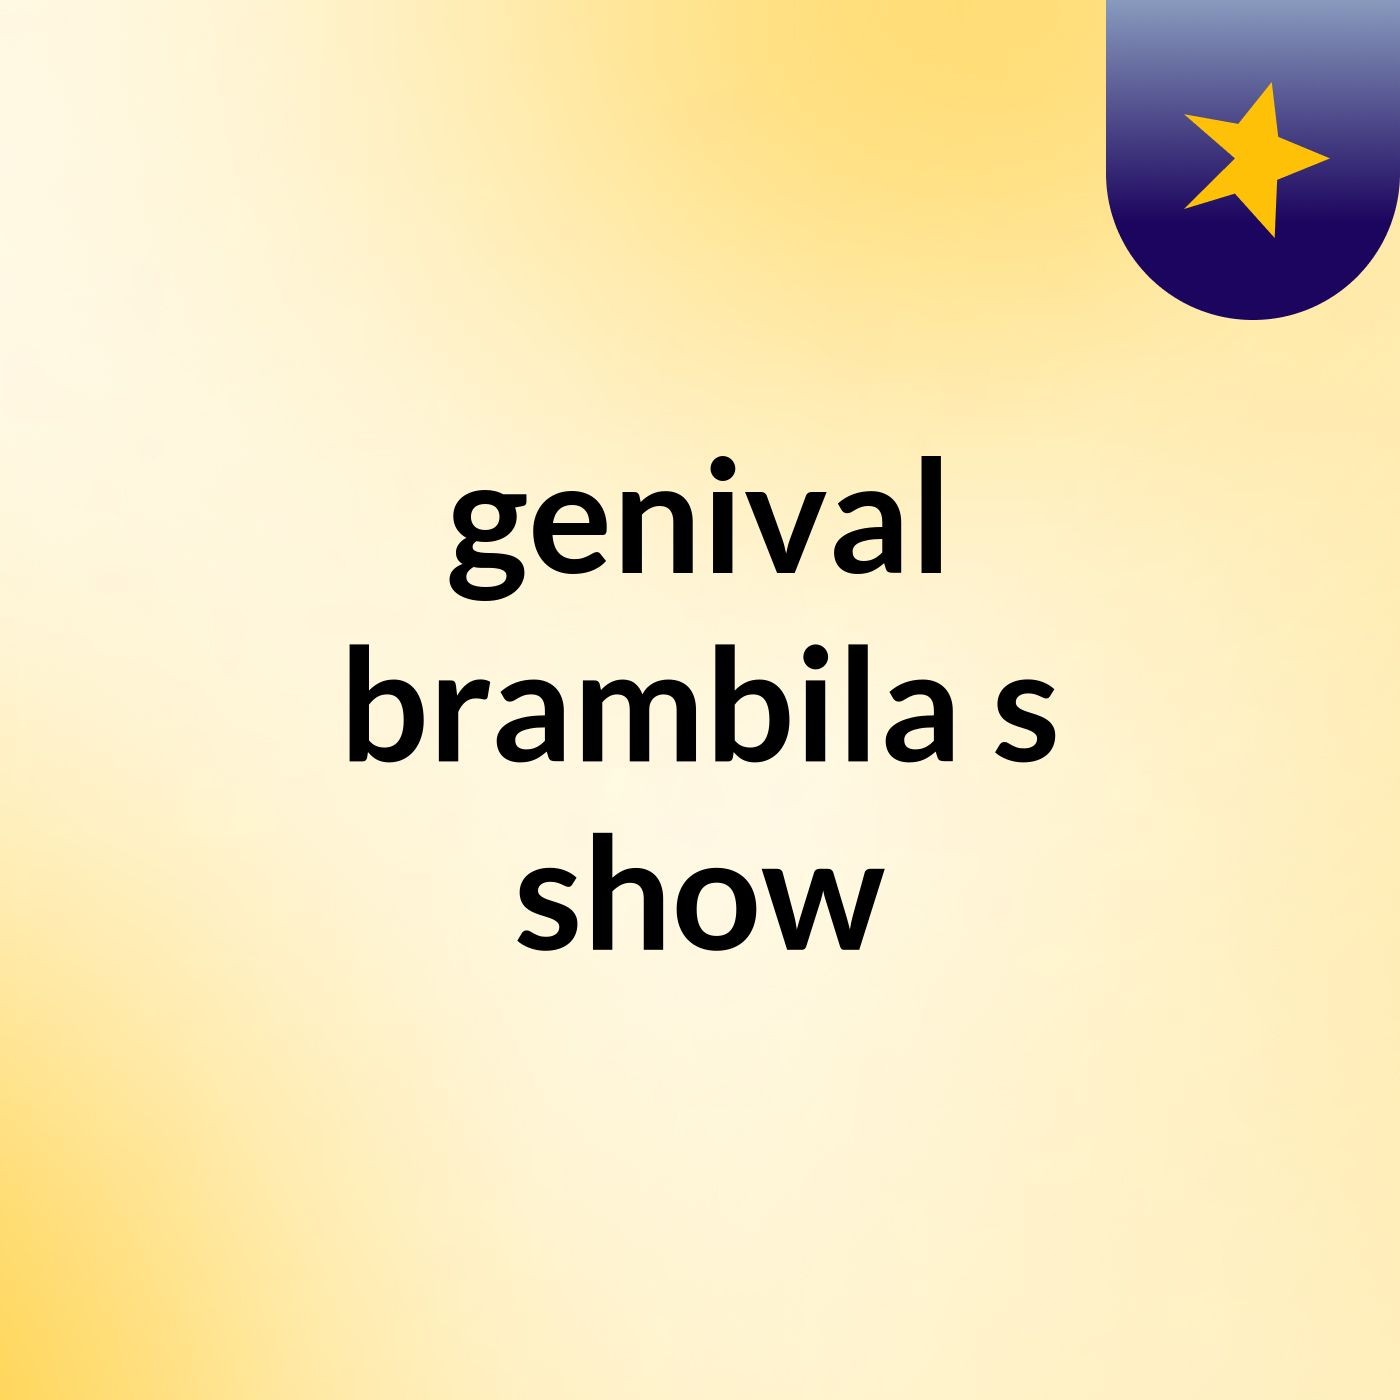 genival brambila's show